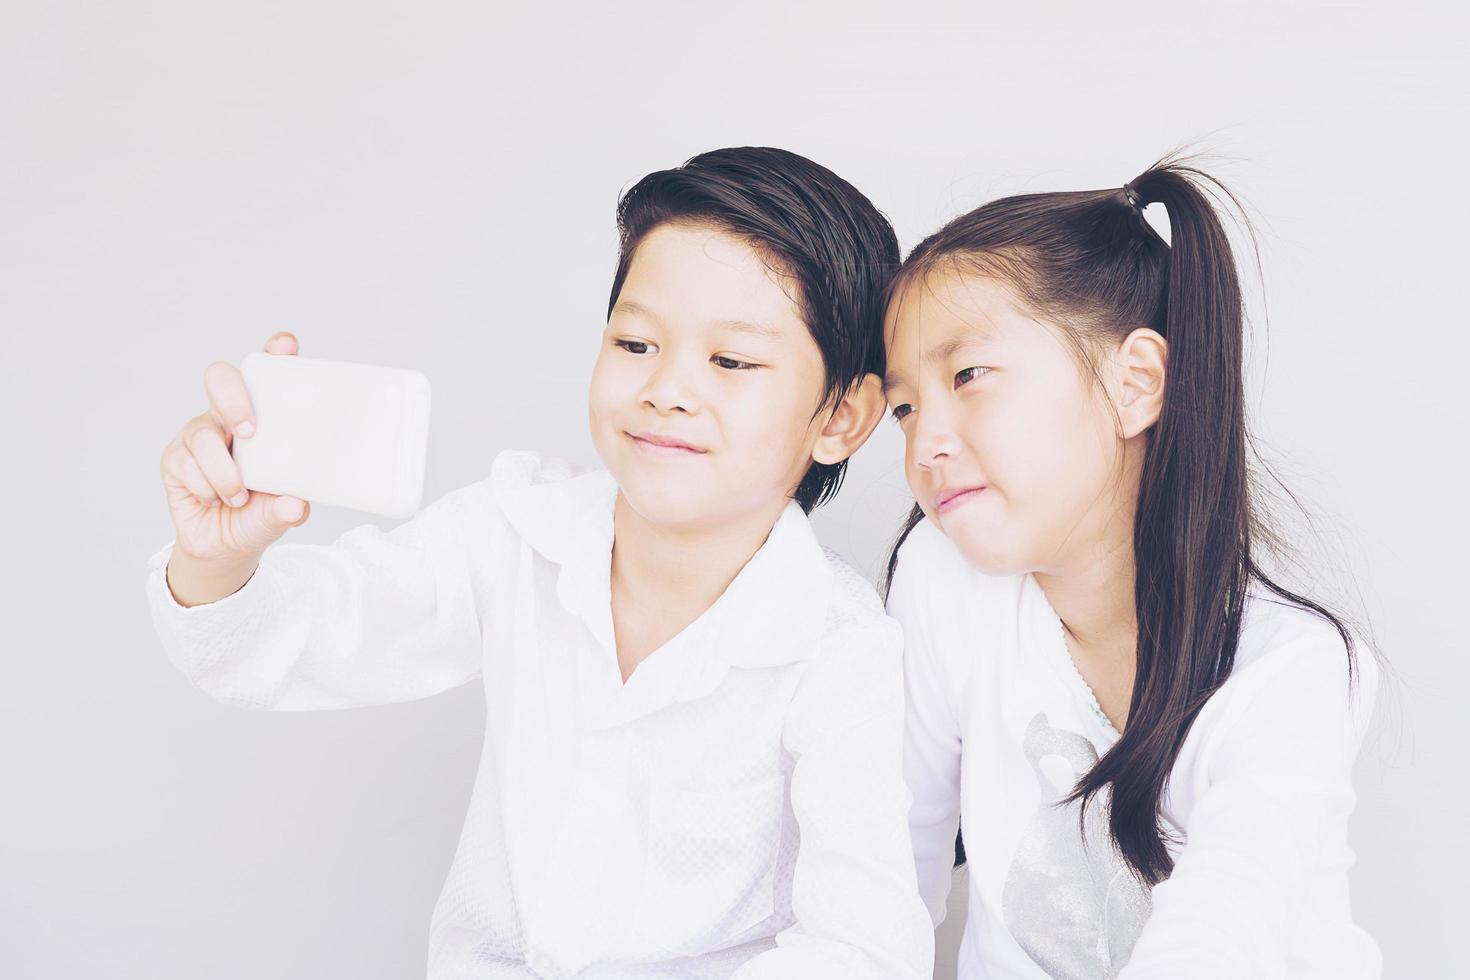 härliga asiatiska skolbarn tar selfie, 7 och 10 år gamla, över grå bakgrund foto